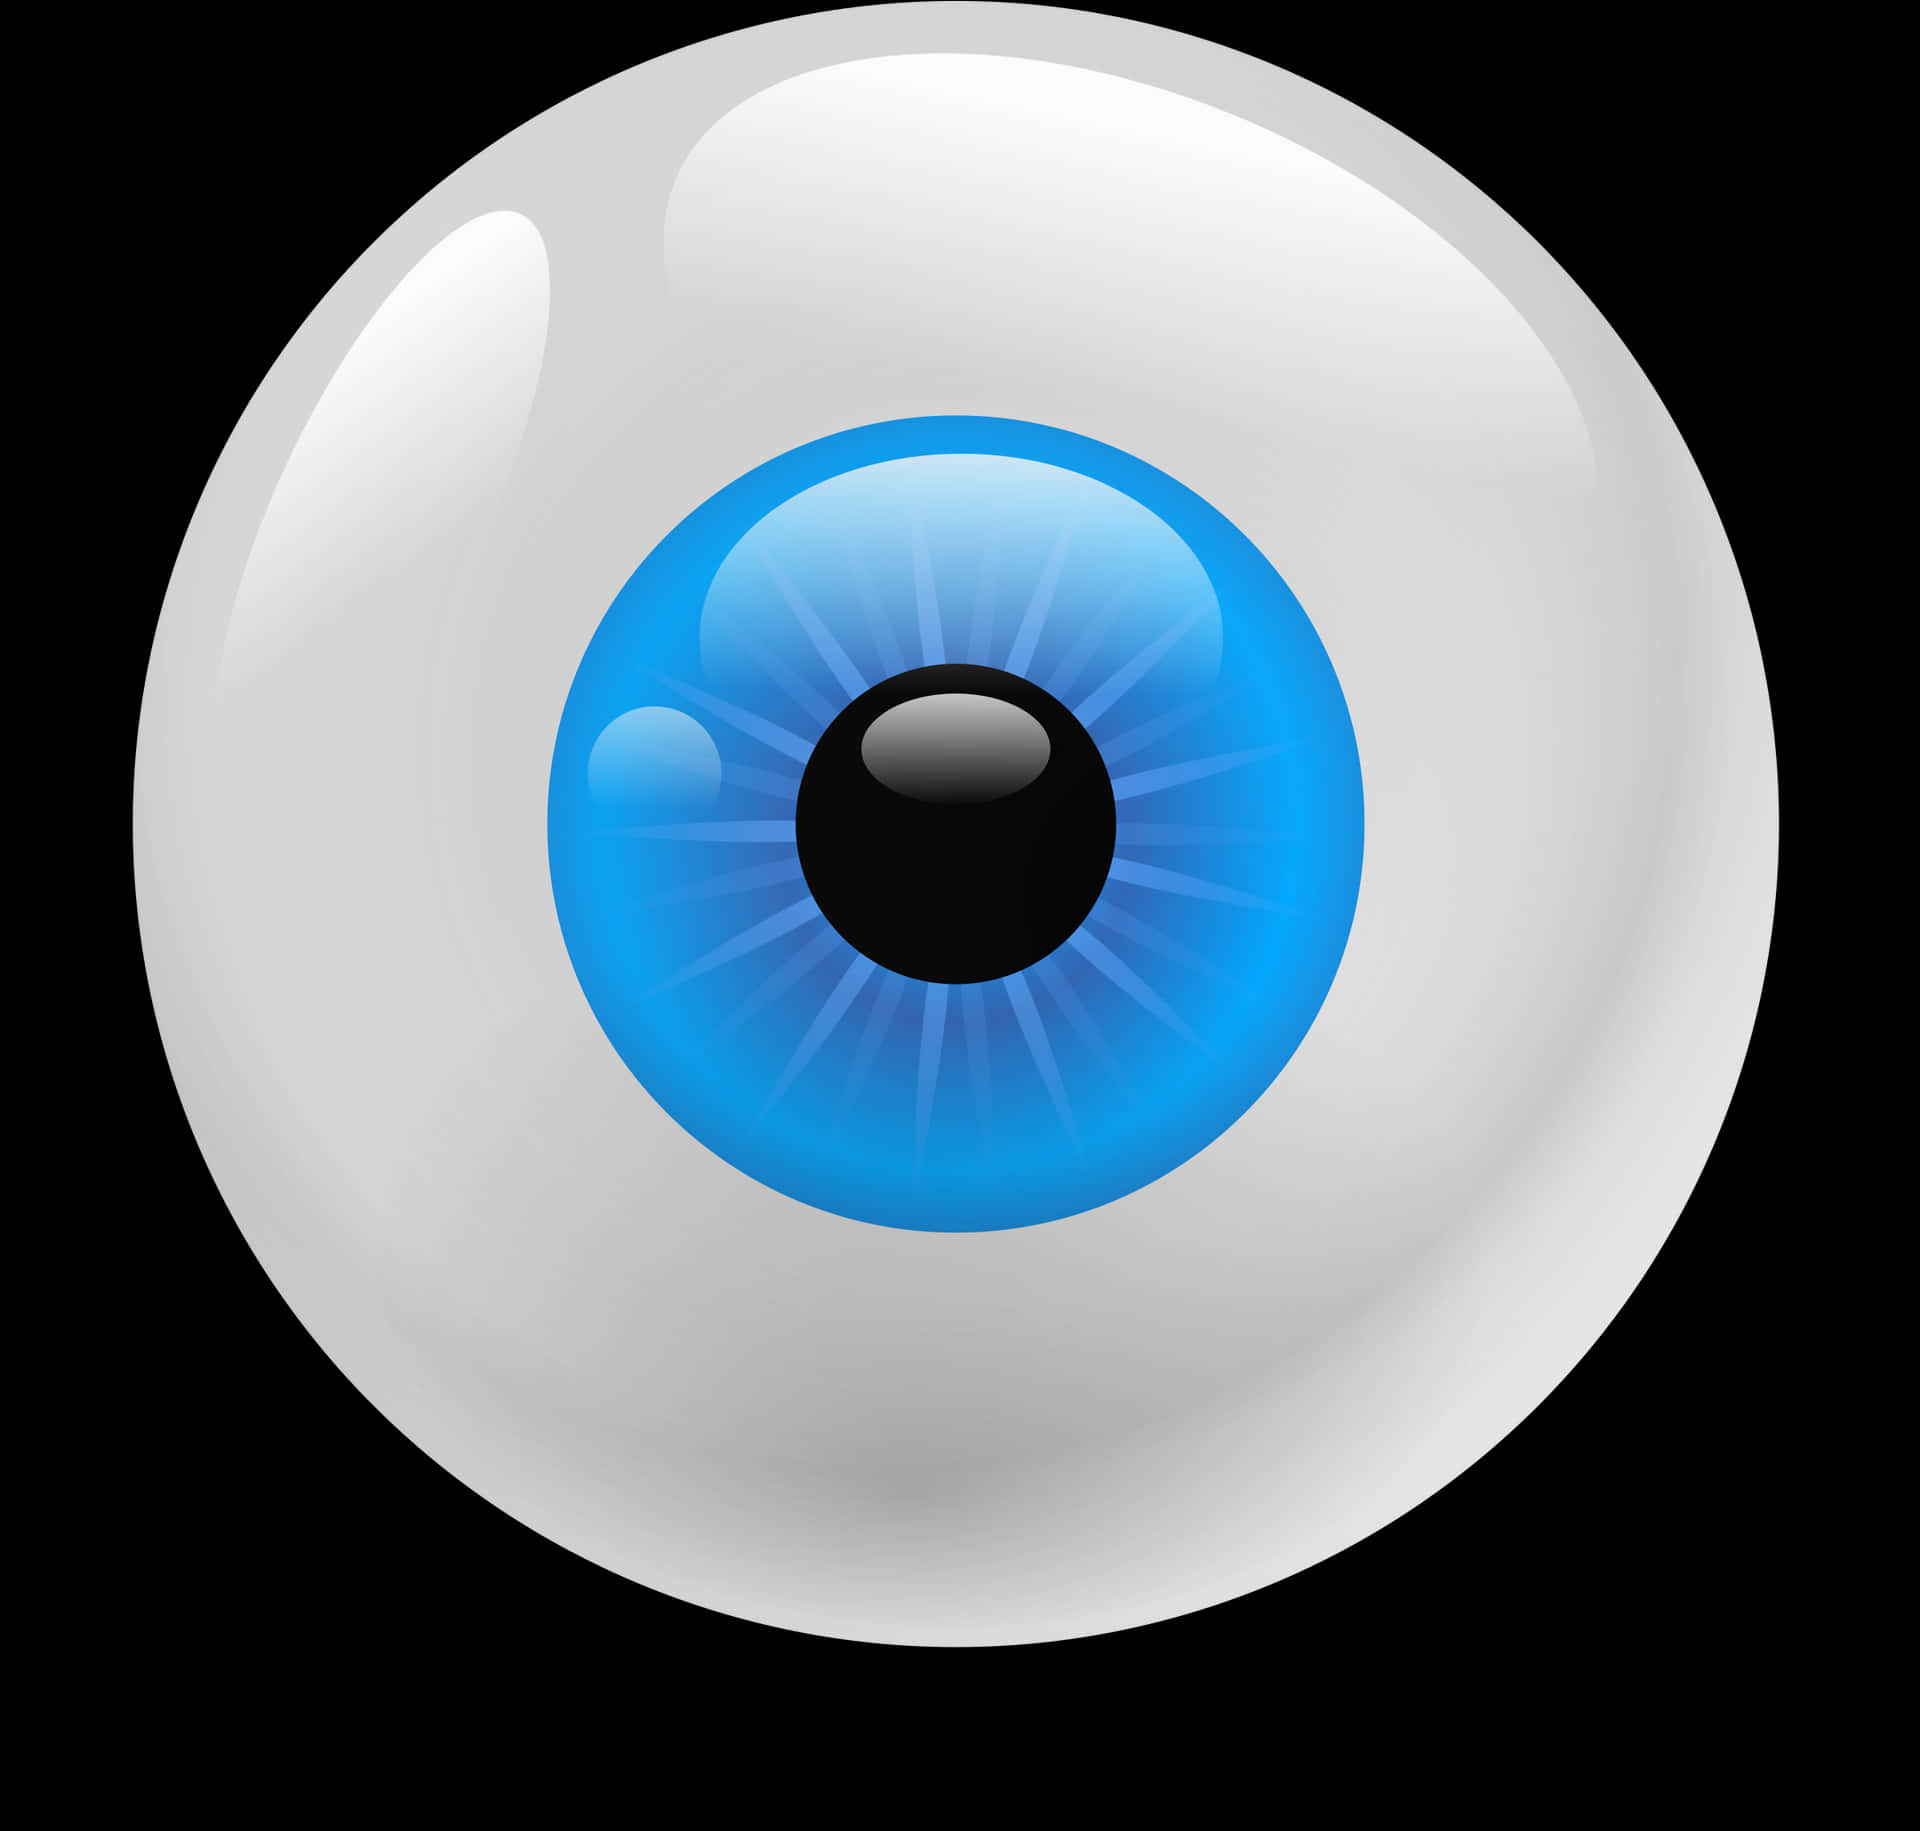 Stylized Blue Eye Illustration PNG image